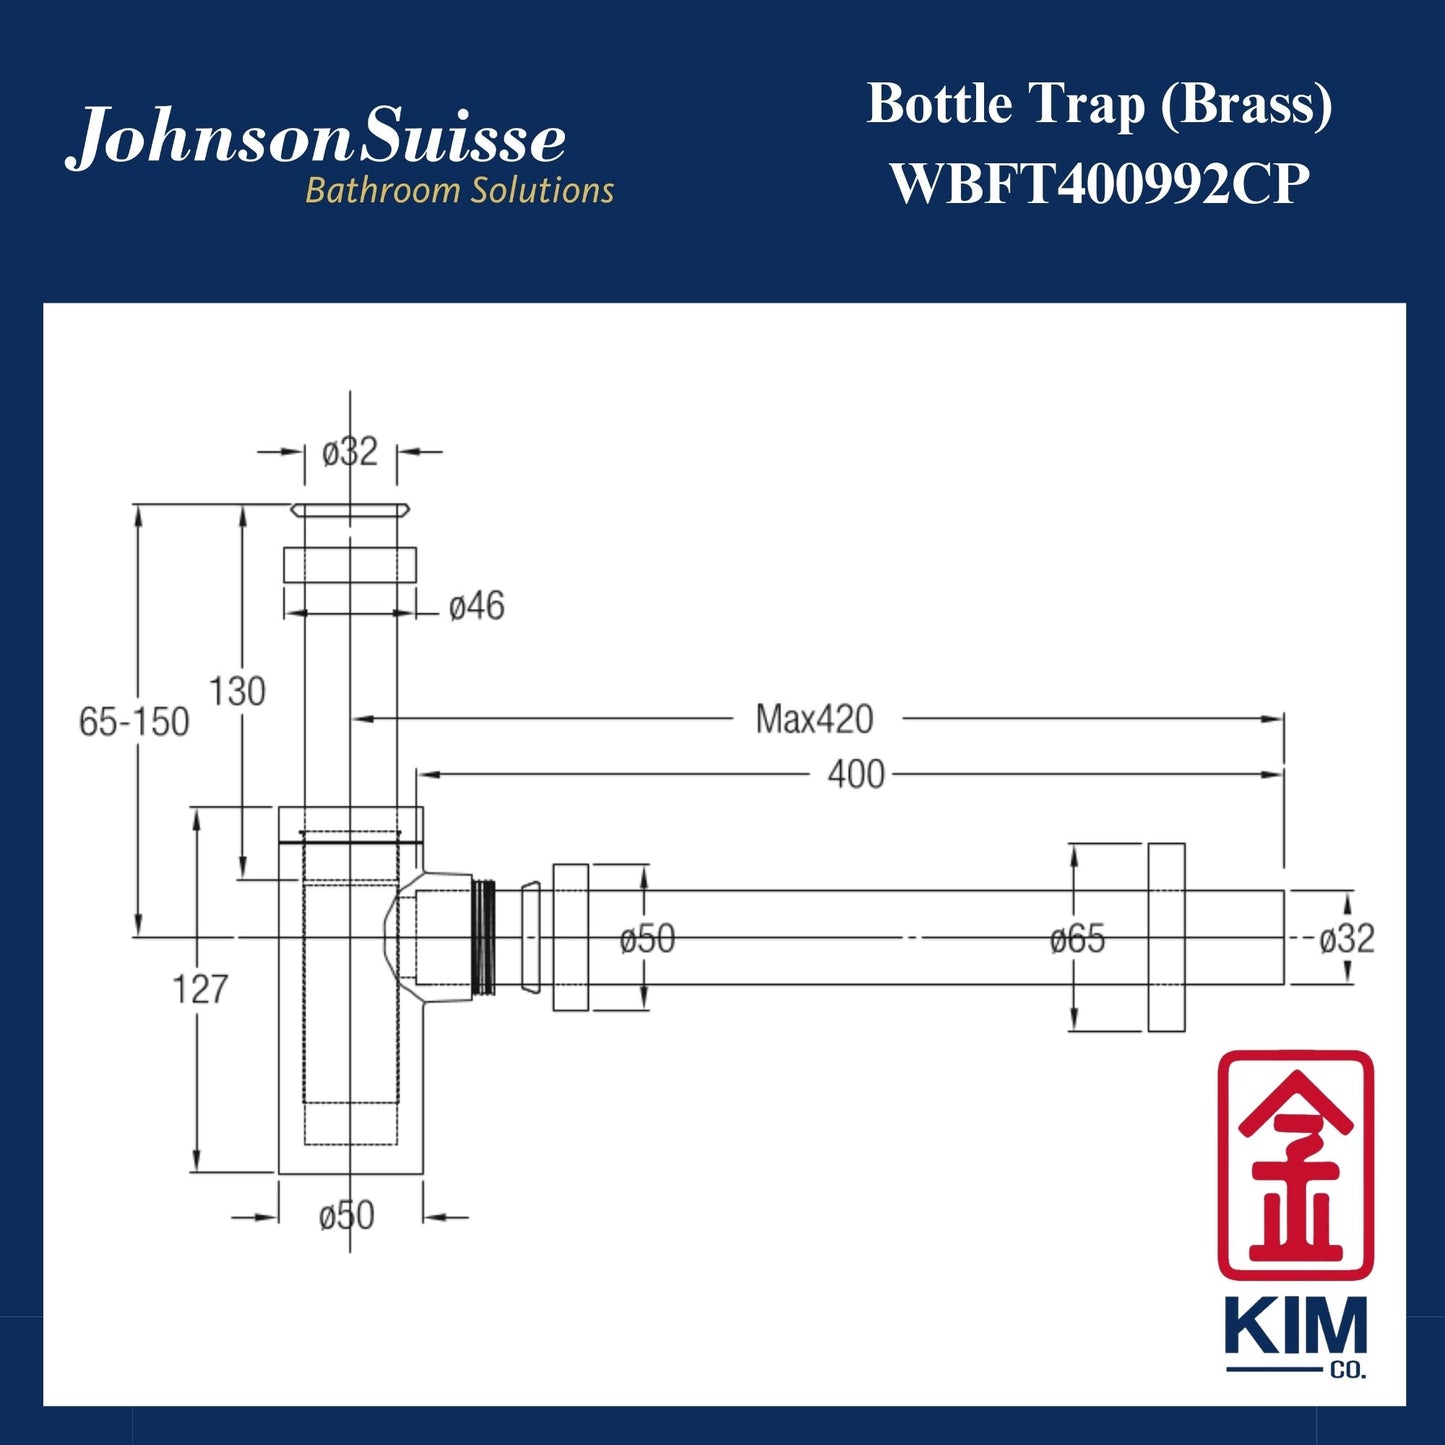 Johnson Suisse Brass Premium Bottle Trap (WBFT400992CP)